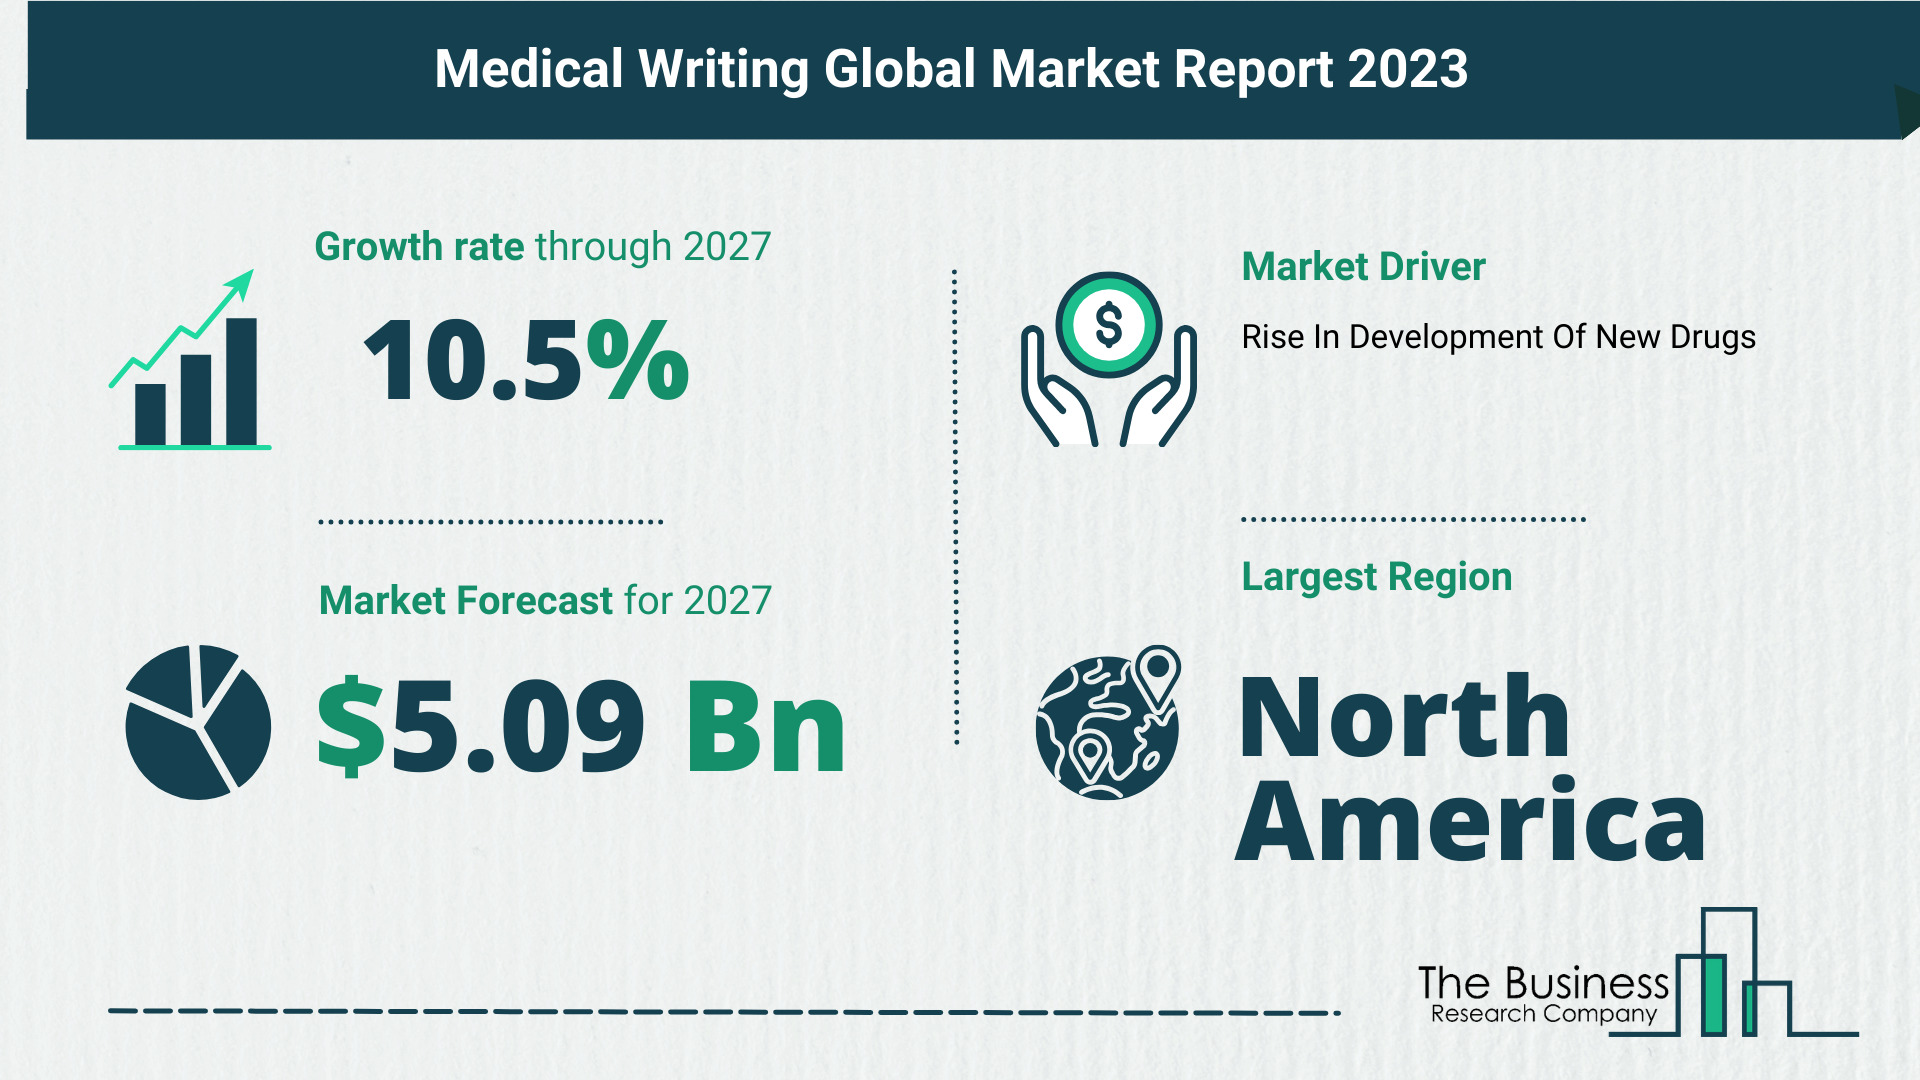 Medical Writing Market Forecast 2023: Forecast Market Size, Drivers And Key Segments